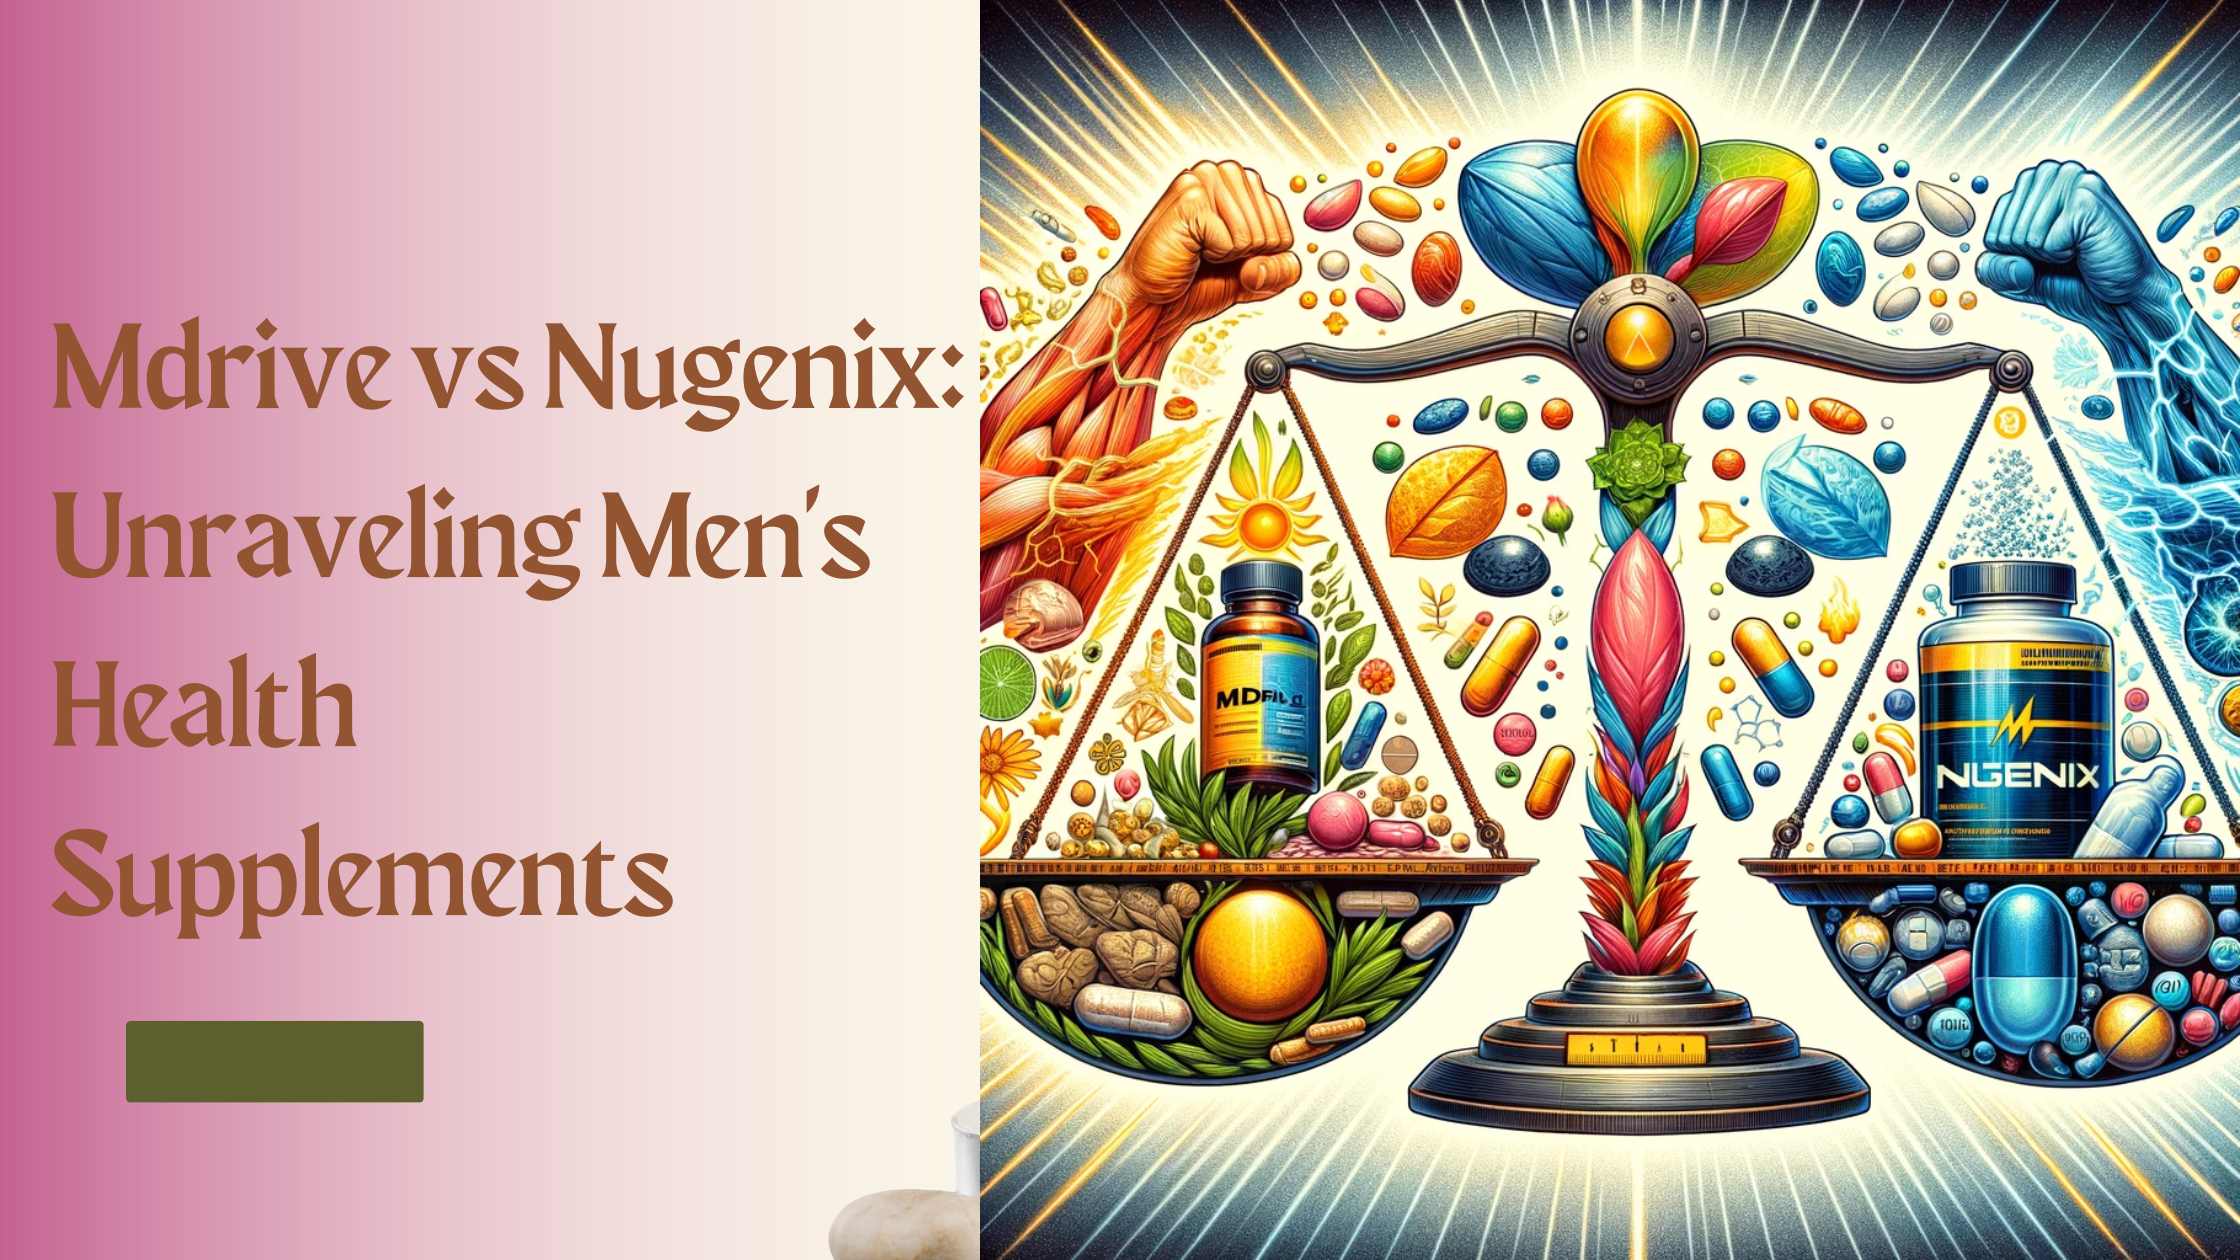 Mdrive vs Nugenix